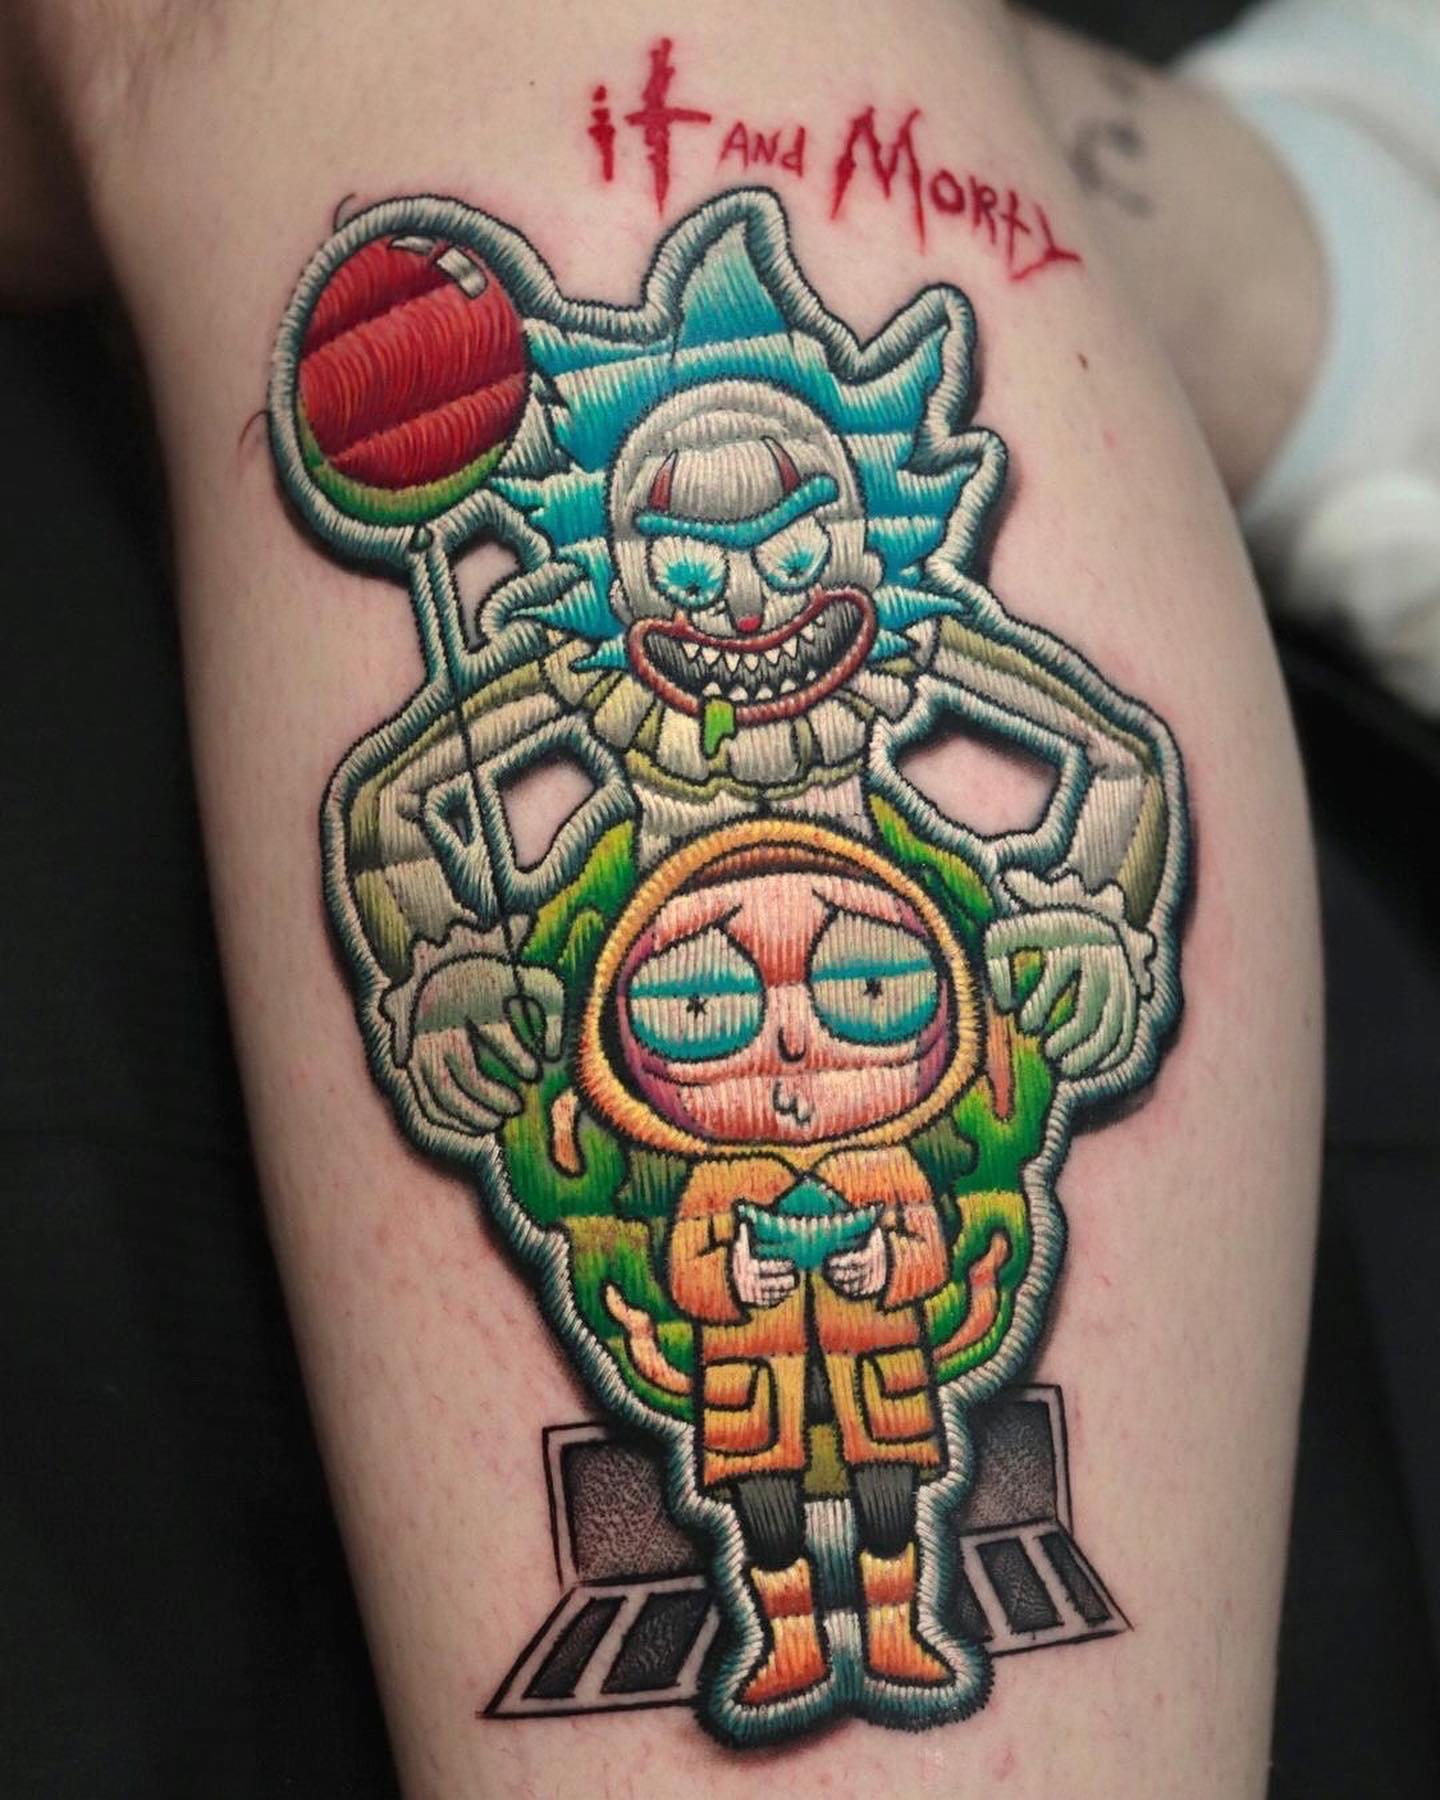 Tatuaje divertido de It y Morty